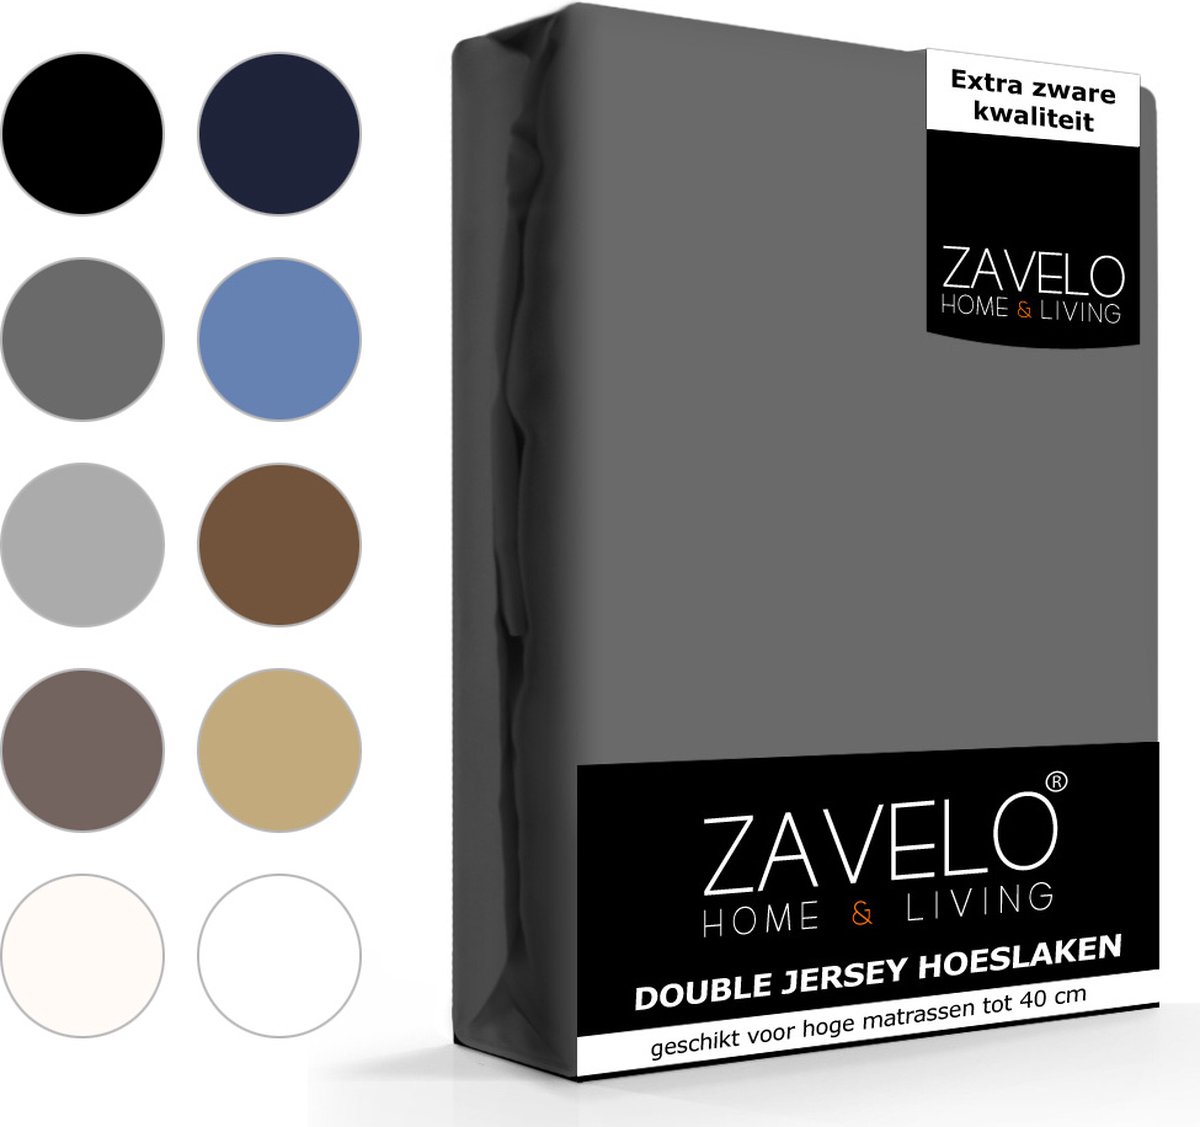 Slaaptextiel Zavelo Double Jersey Hoeslaken Antraciet-lits-jumeaux (180x220 Cm) - Grijs